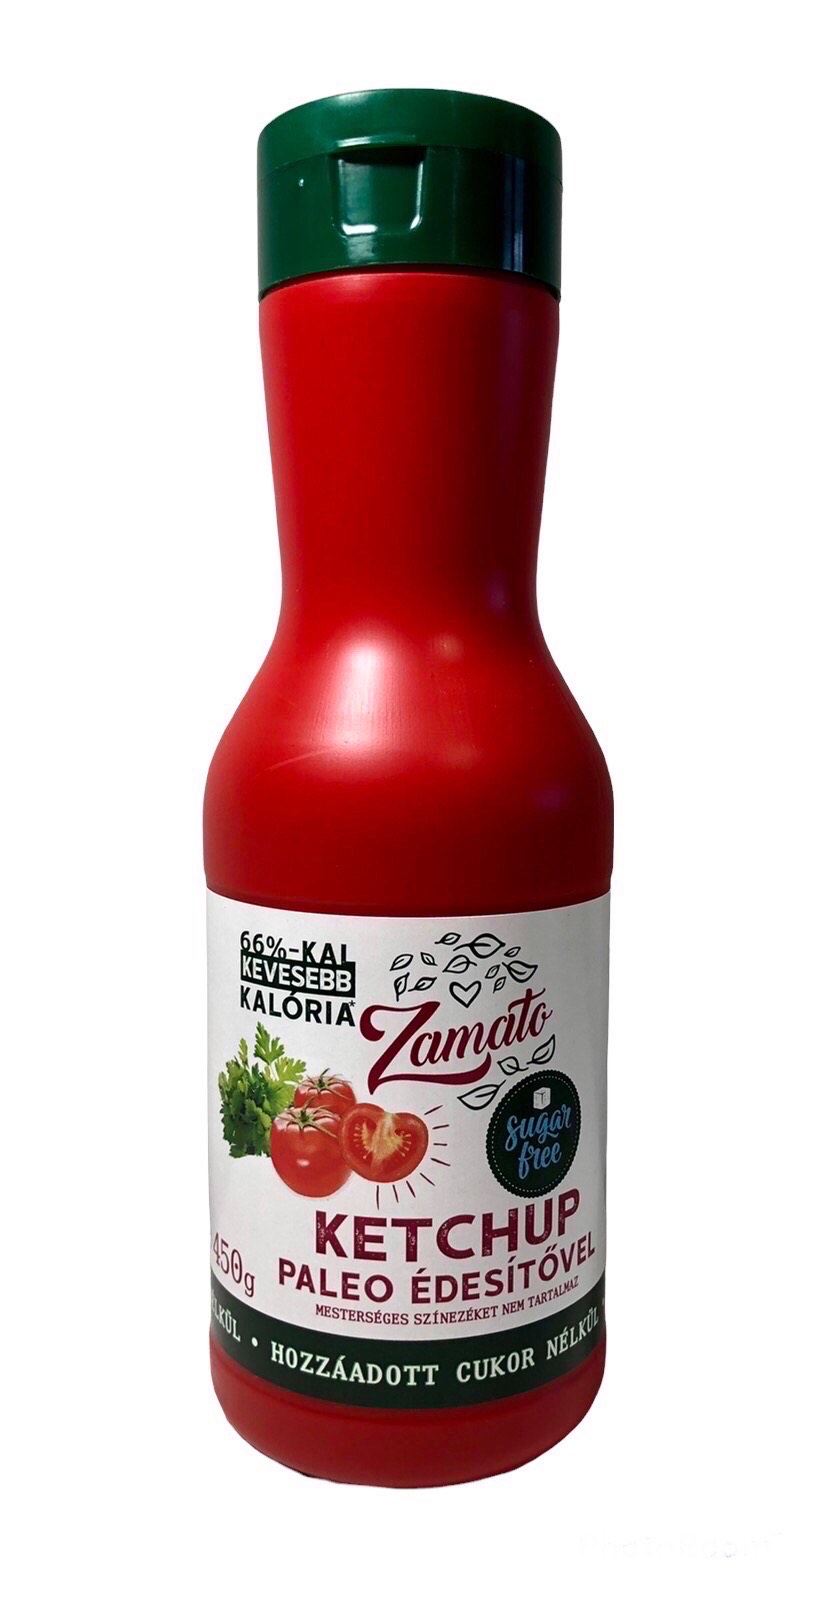 Zamato Cukormentes Ketchup 450 g